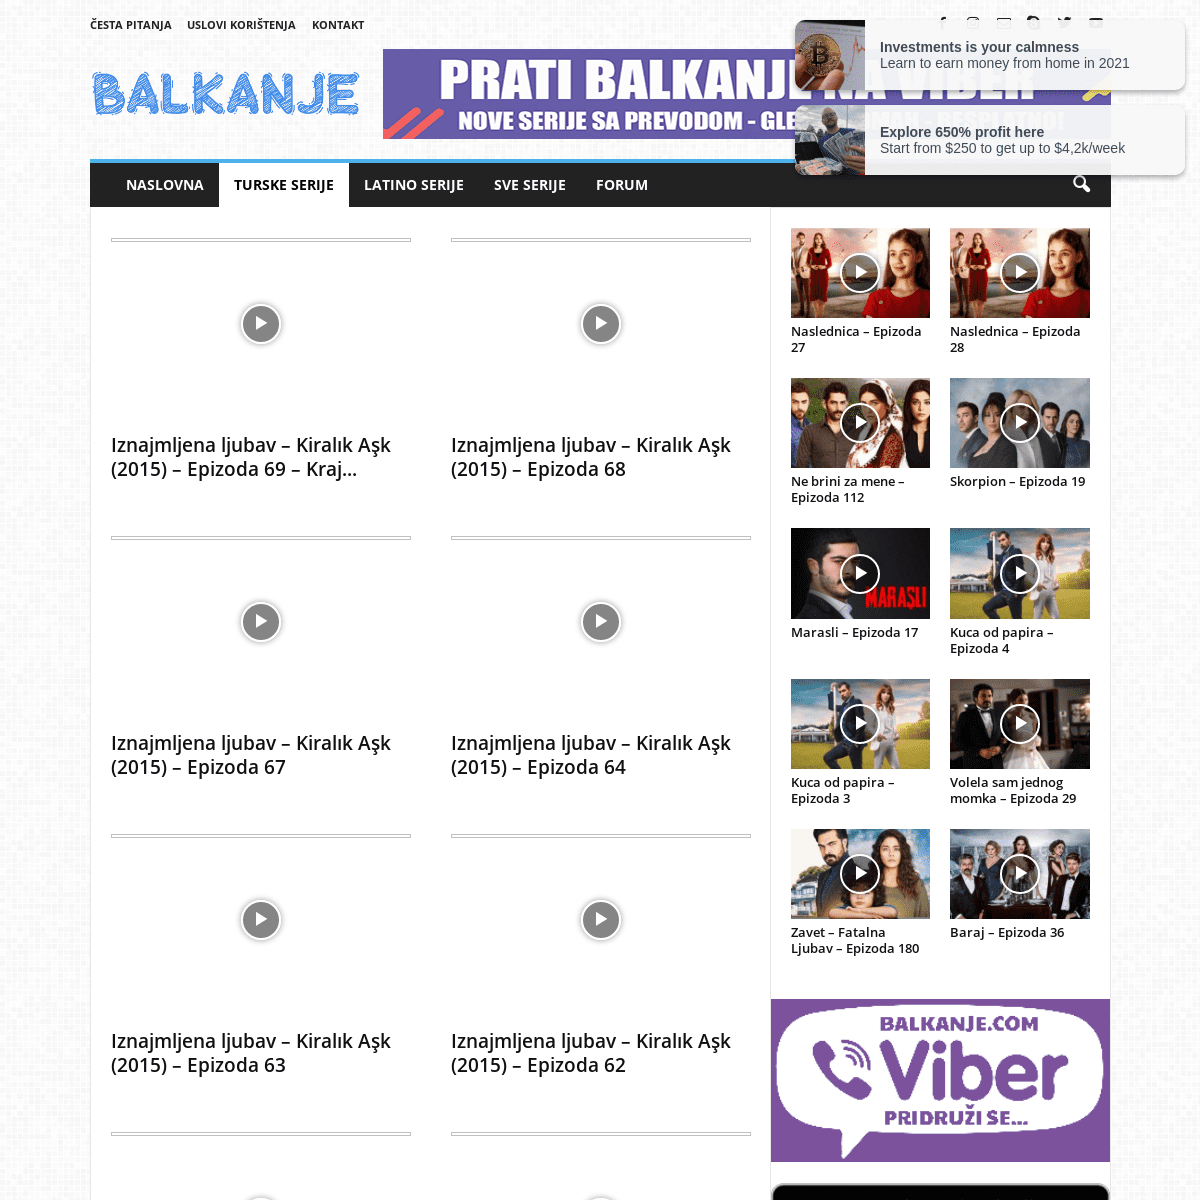 A complete backup of https://balkanje.com/turske-serije/iznajmljena-ljubav-2015/